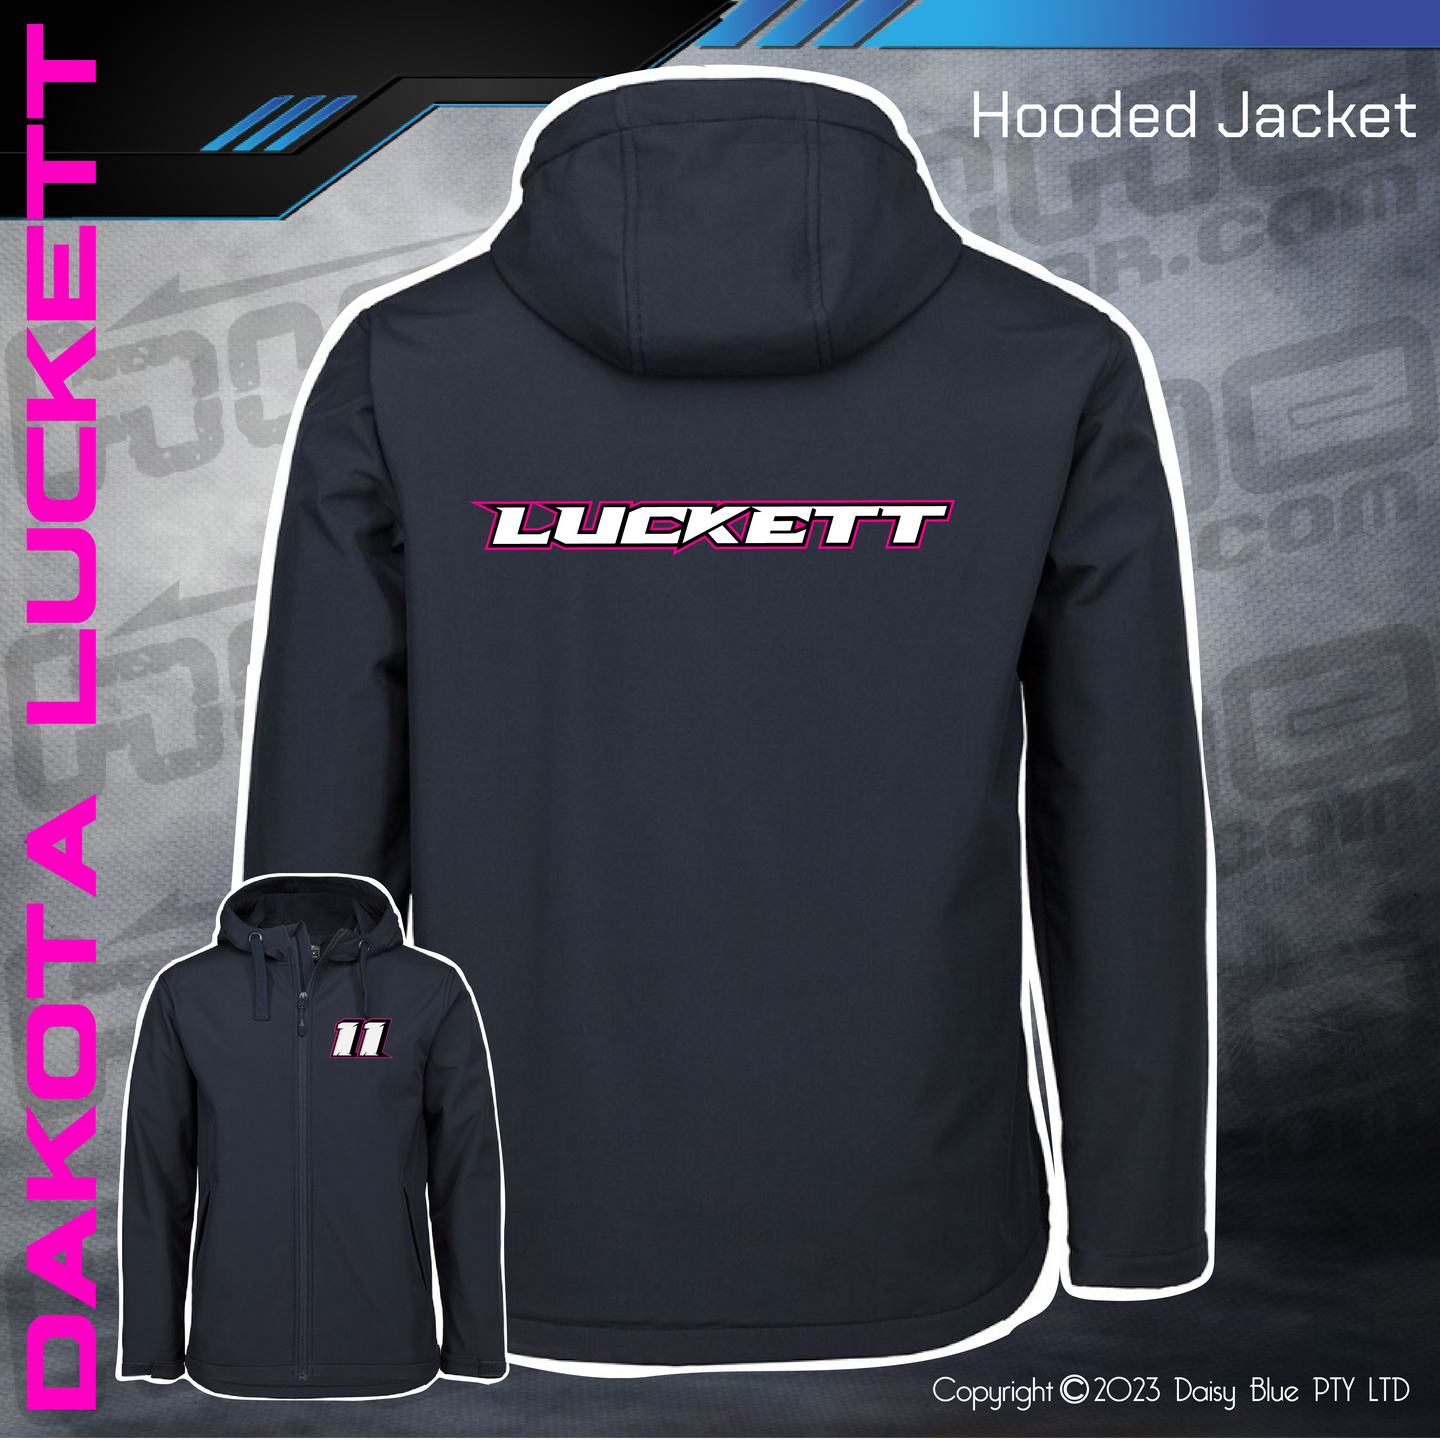 Hooded Jacket - Dakota Luckett